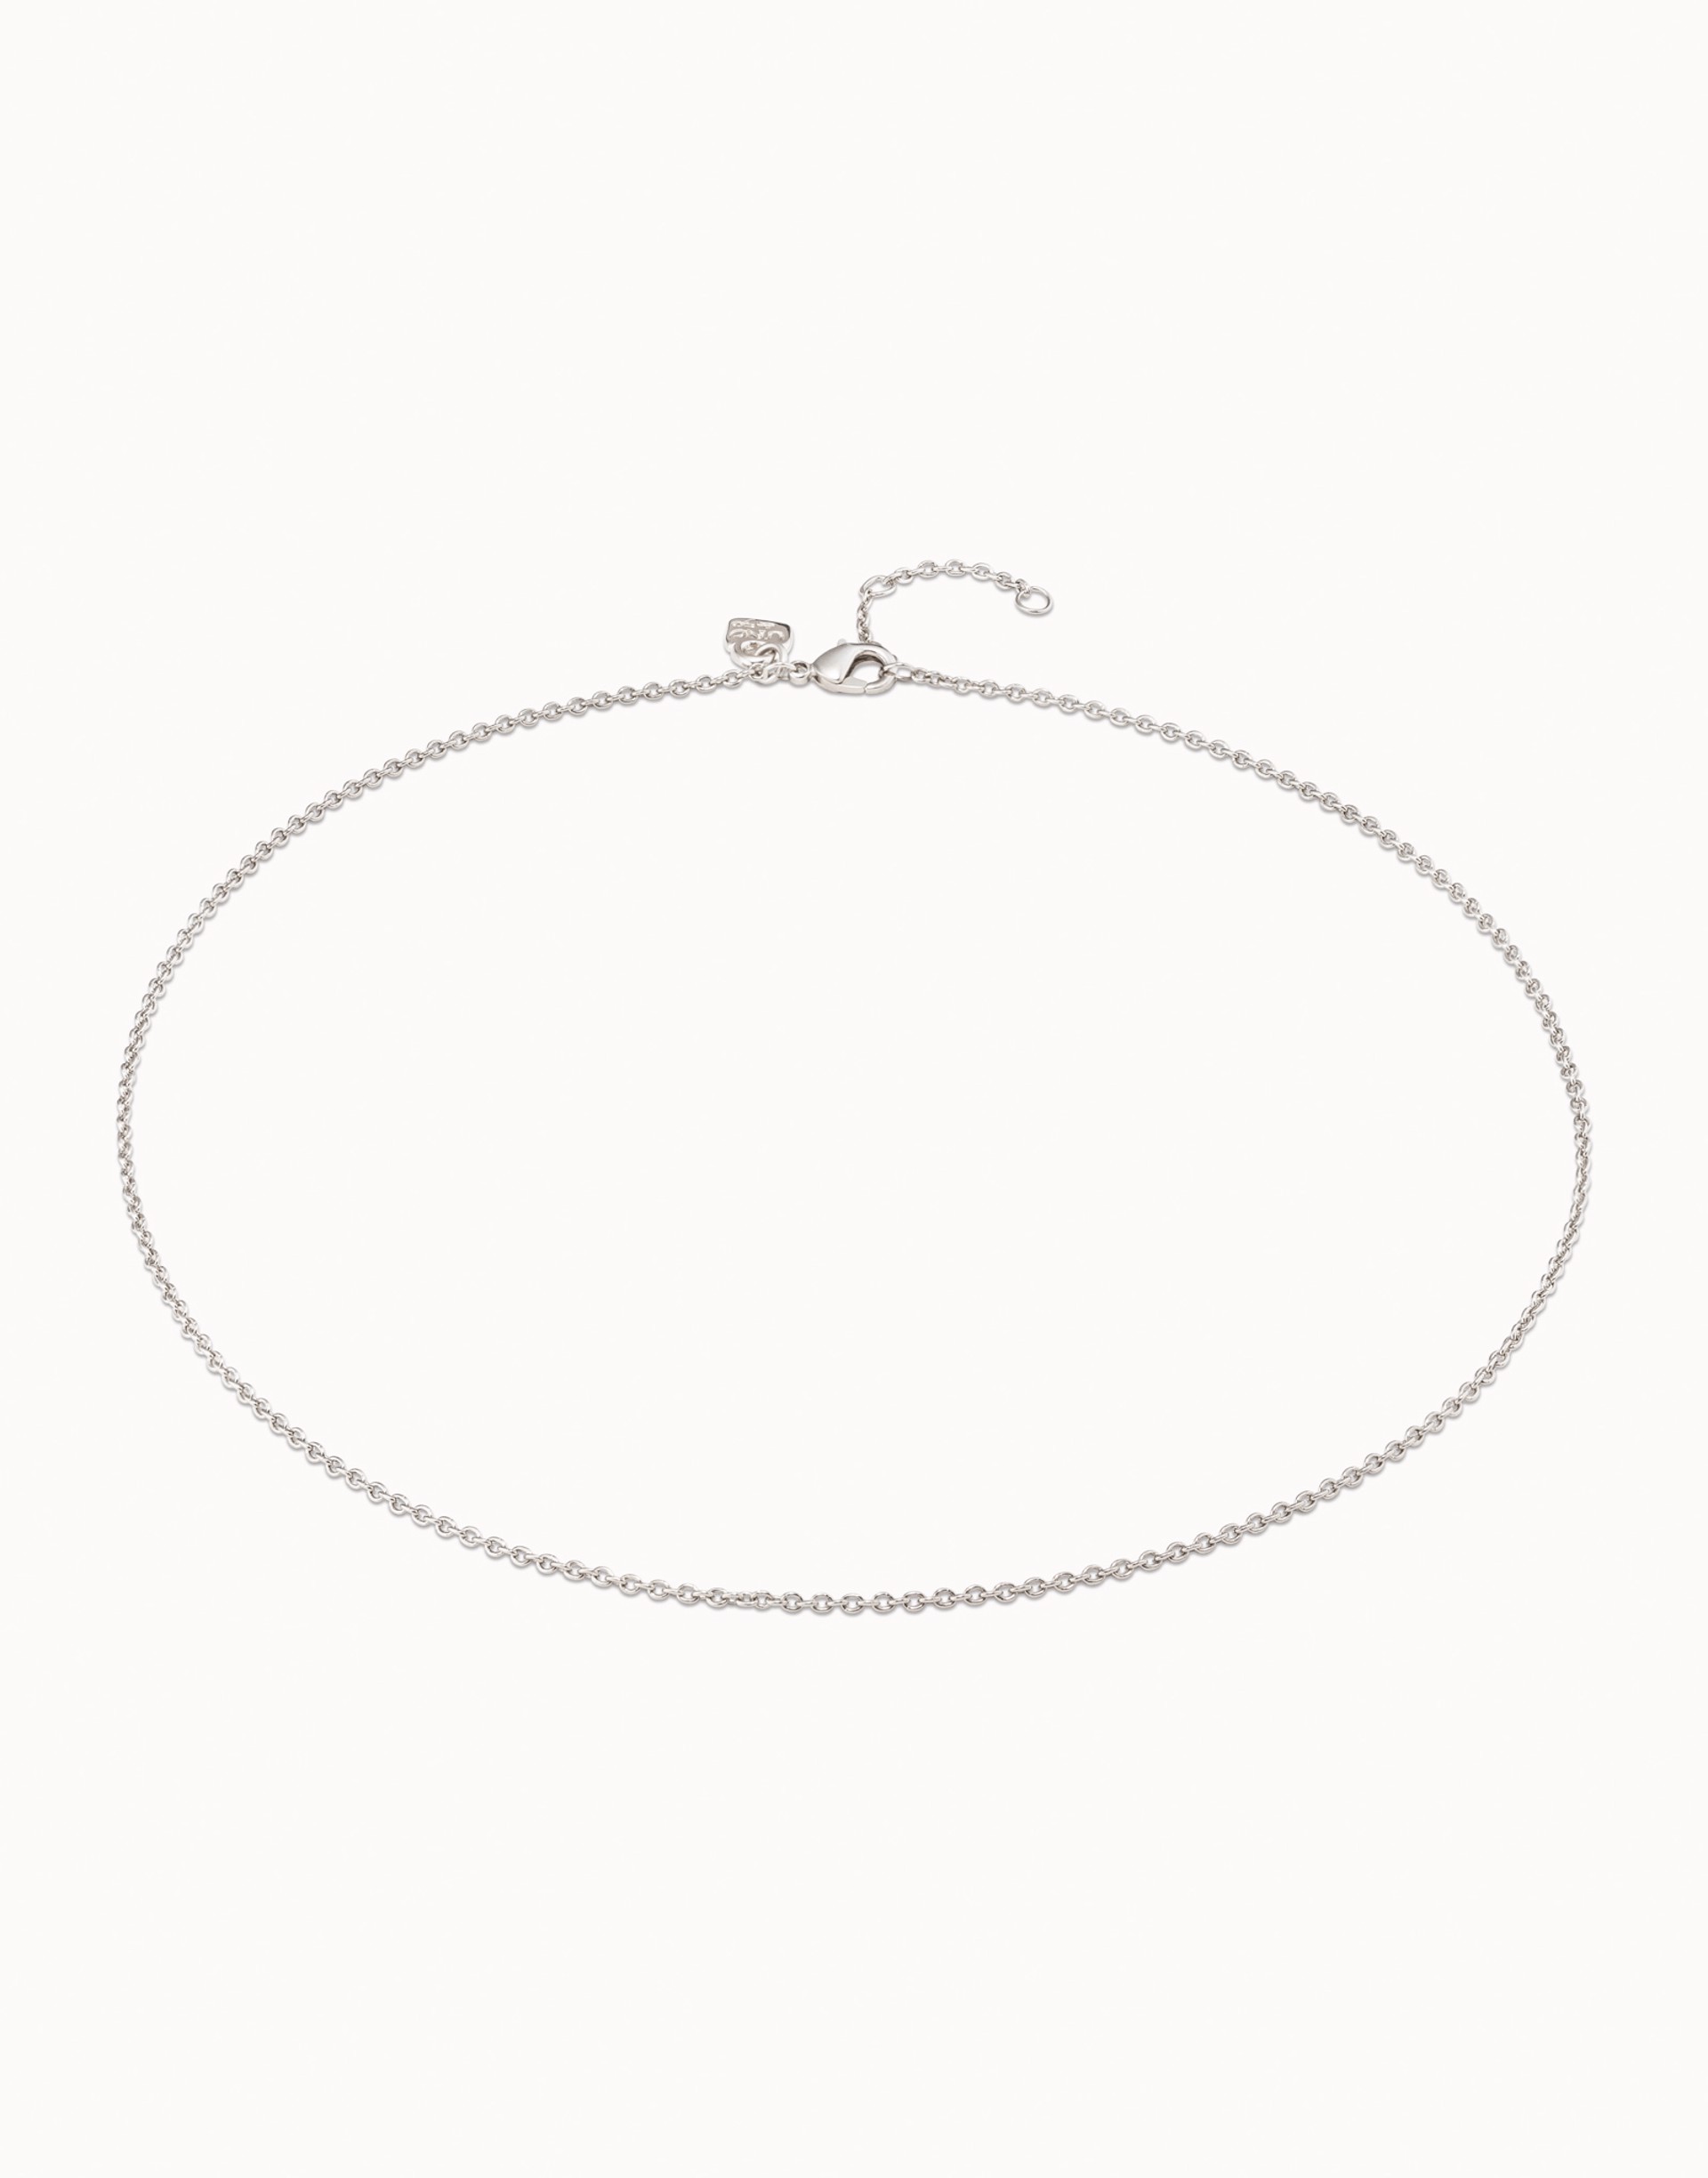 Universal Necklace Silver by UNO DE 50